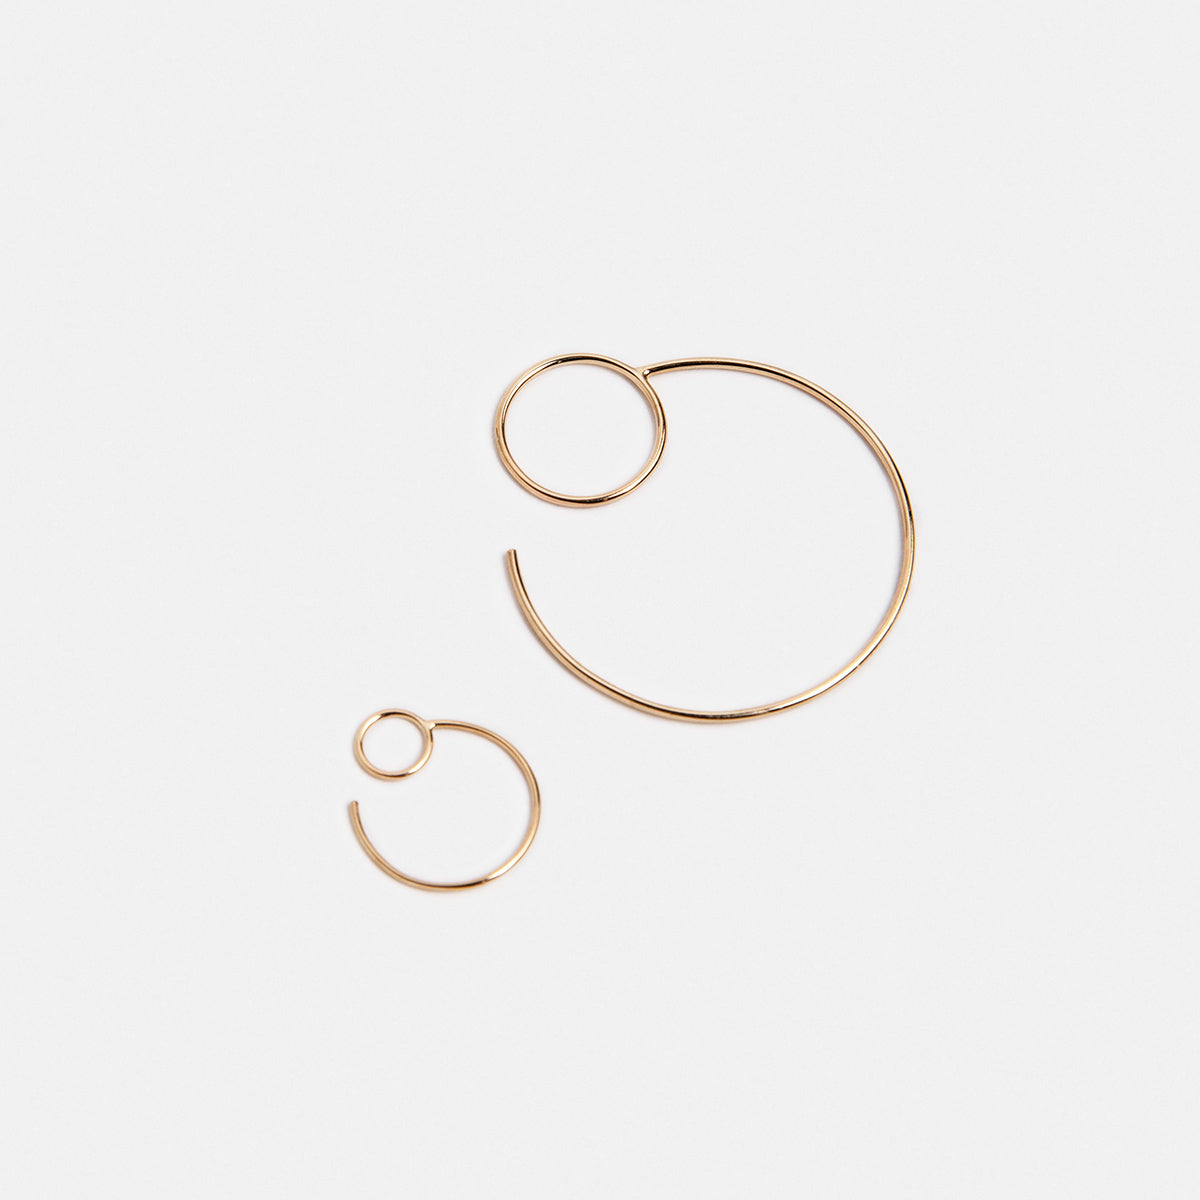 Saga Small Minimalist Hoop Earrings in 14k Gold By SHW Fine Jewelry NYC